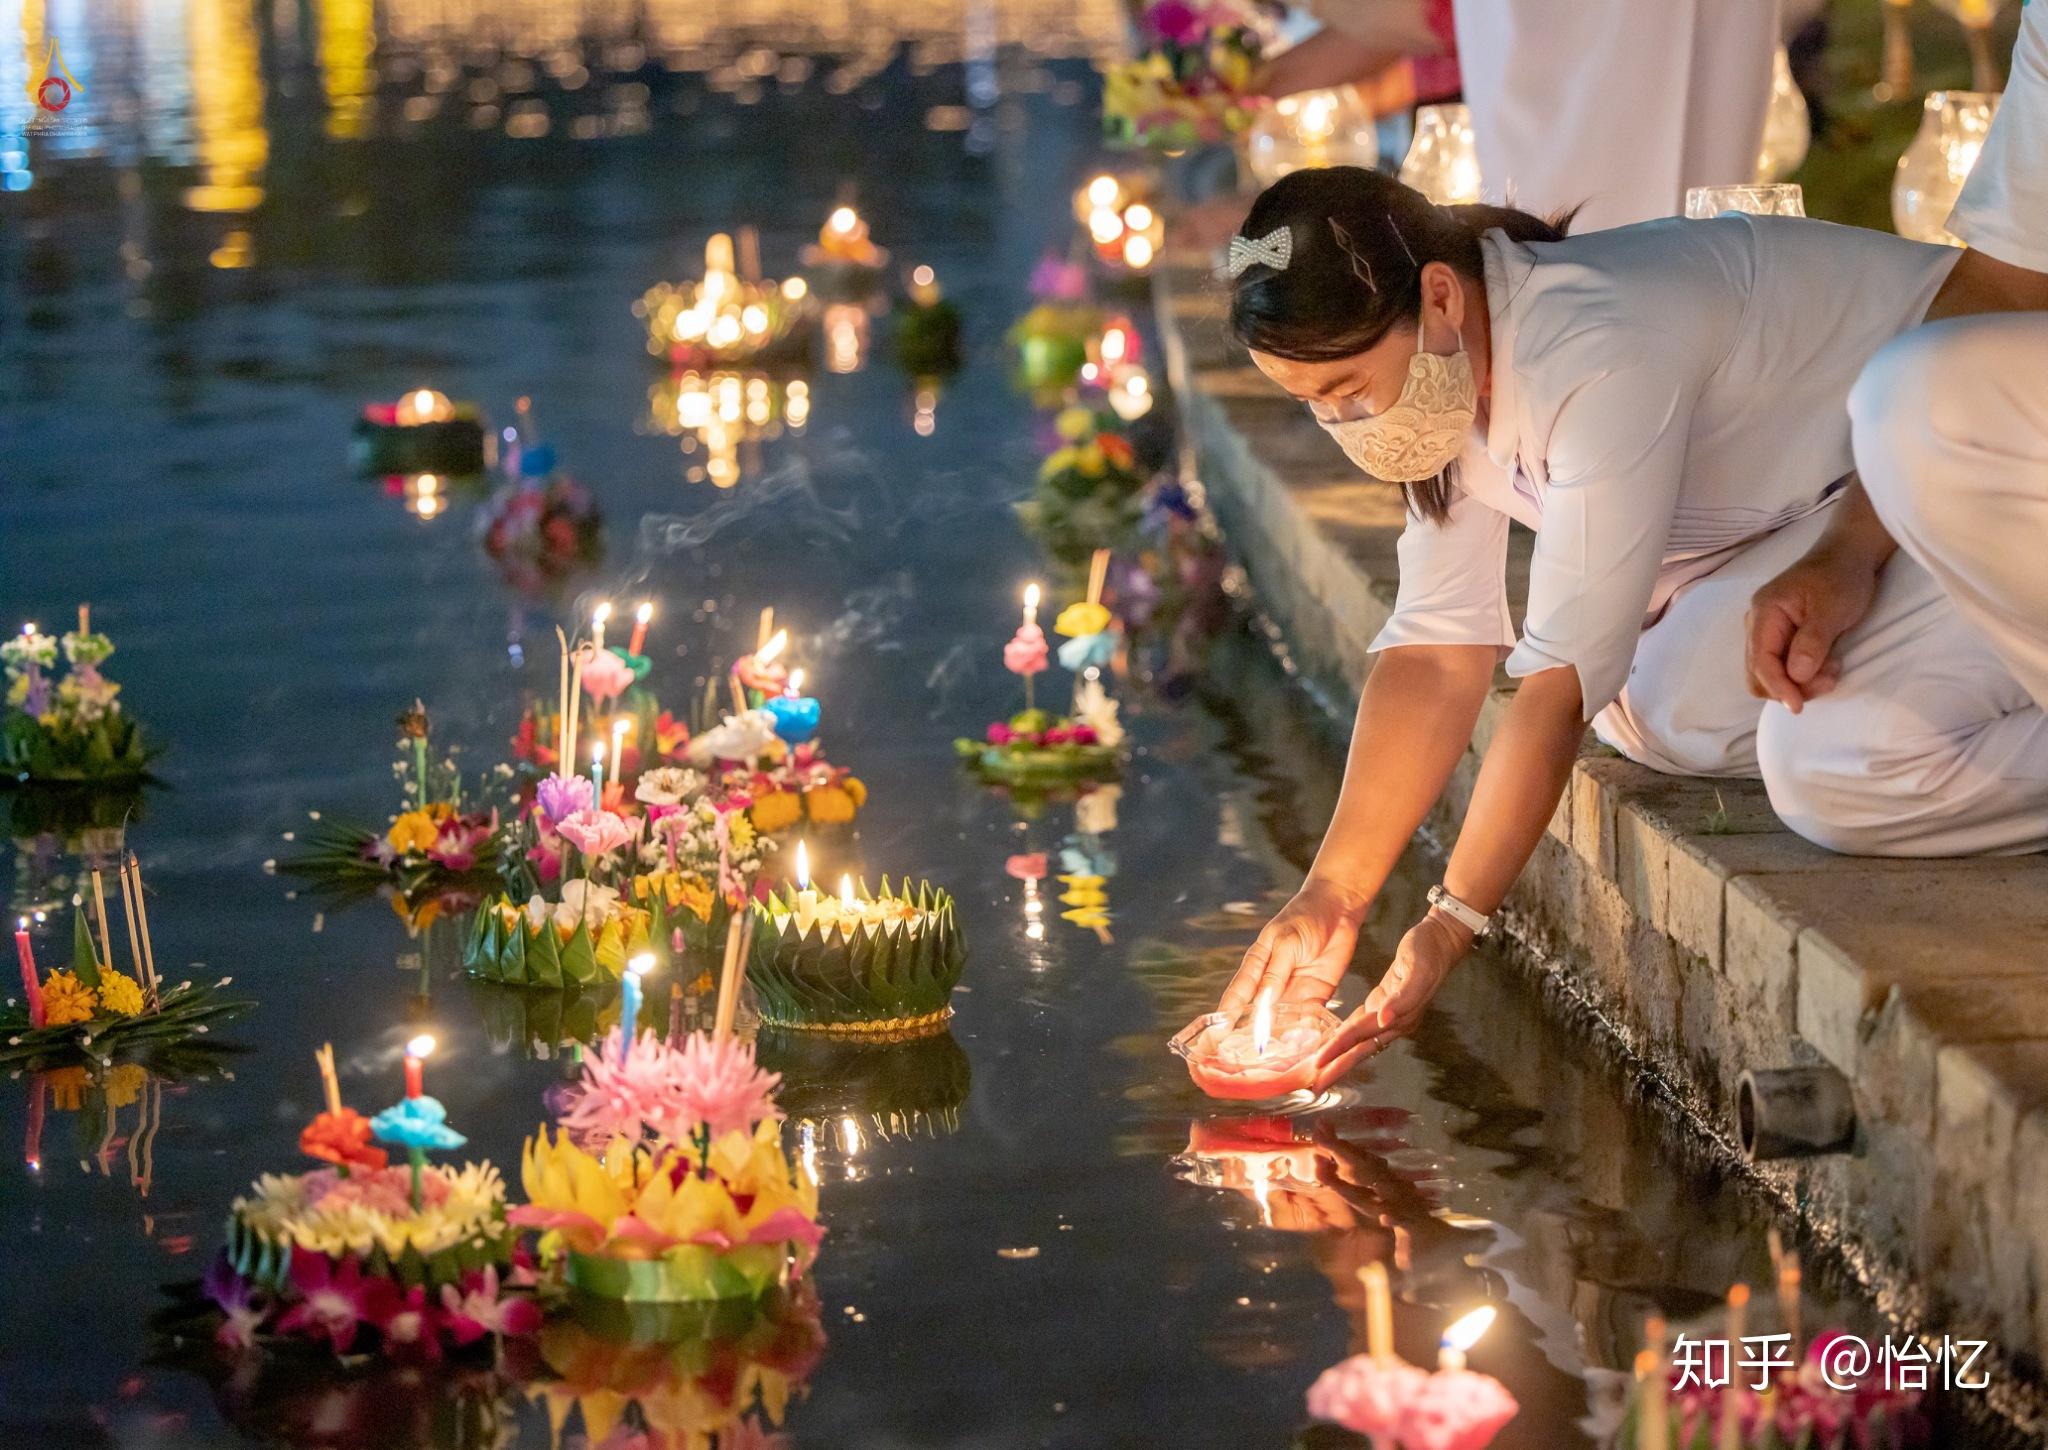 泰国美好的文化水灯节特殊的2020年一场疫情影响全世界的人们